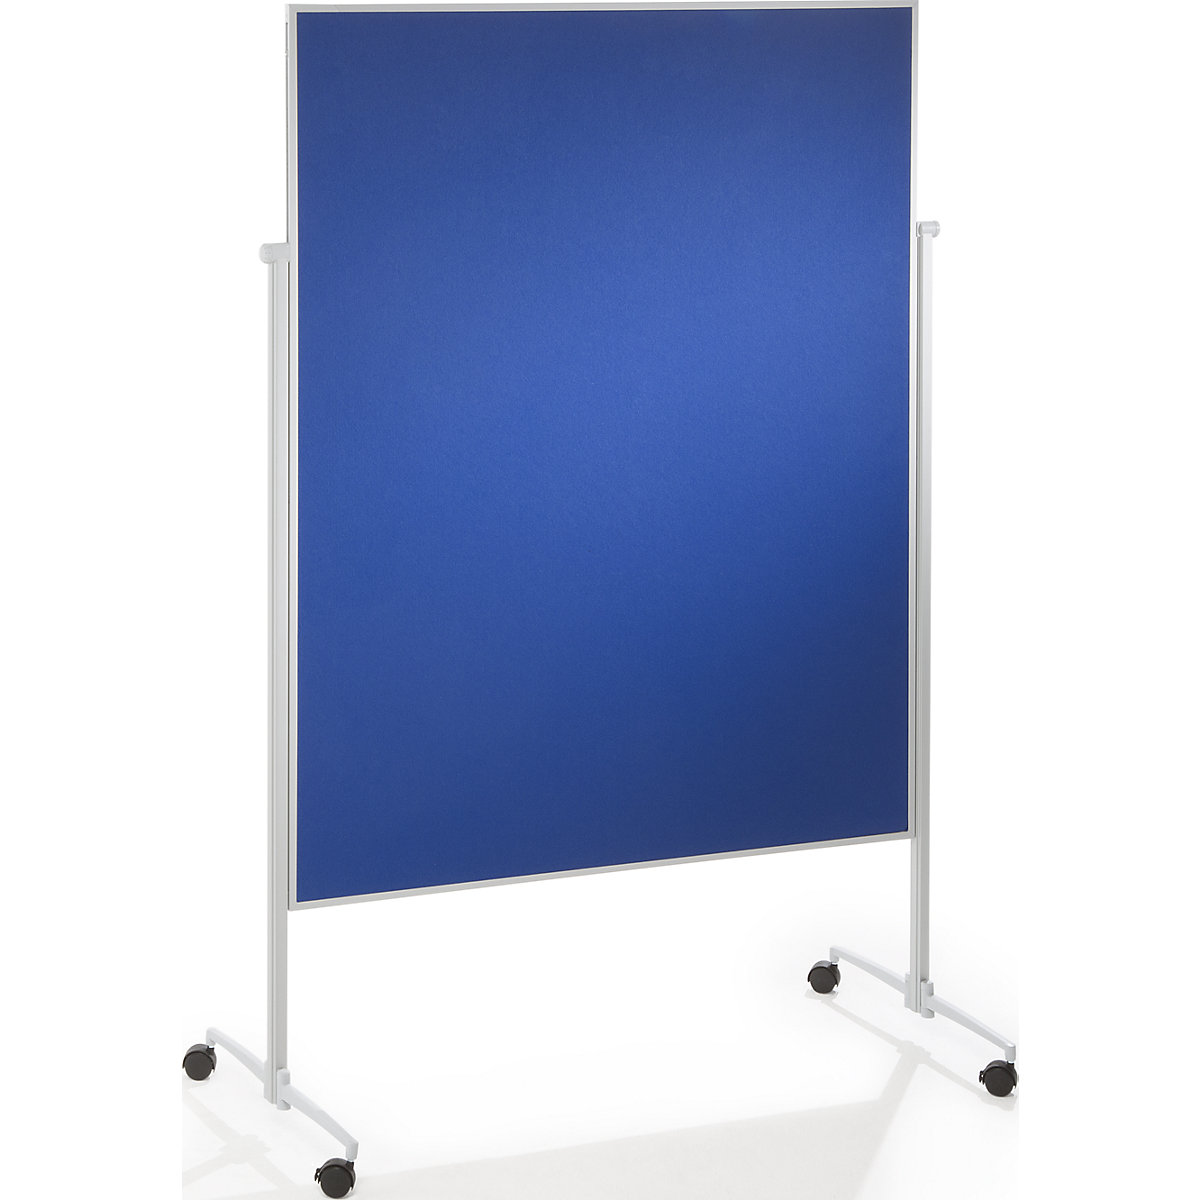 Presentatiebord EVOLUTION plus – magnetoplan, eendelig, vilt, blauw-6